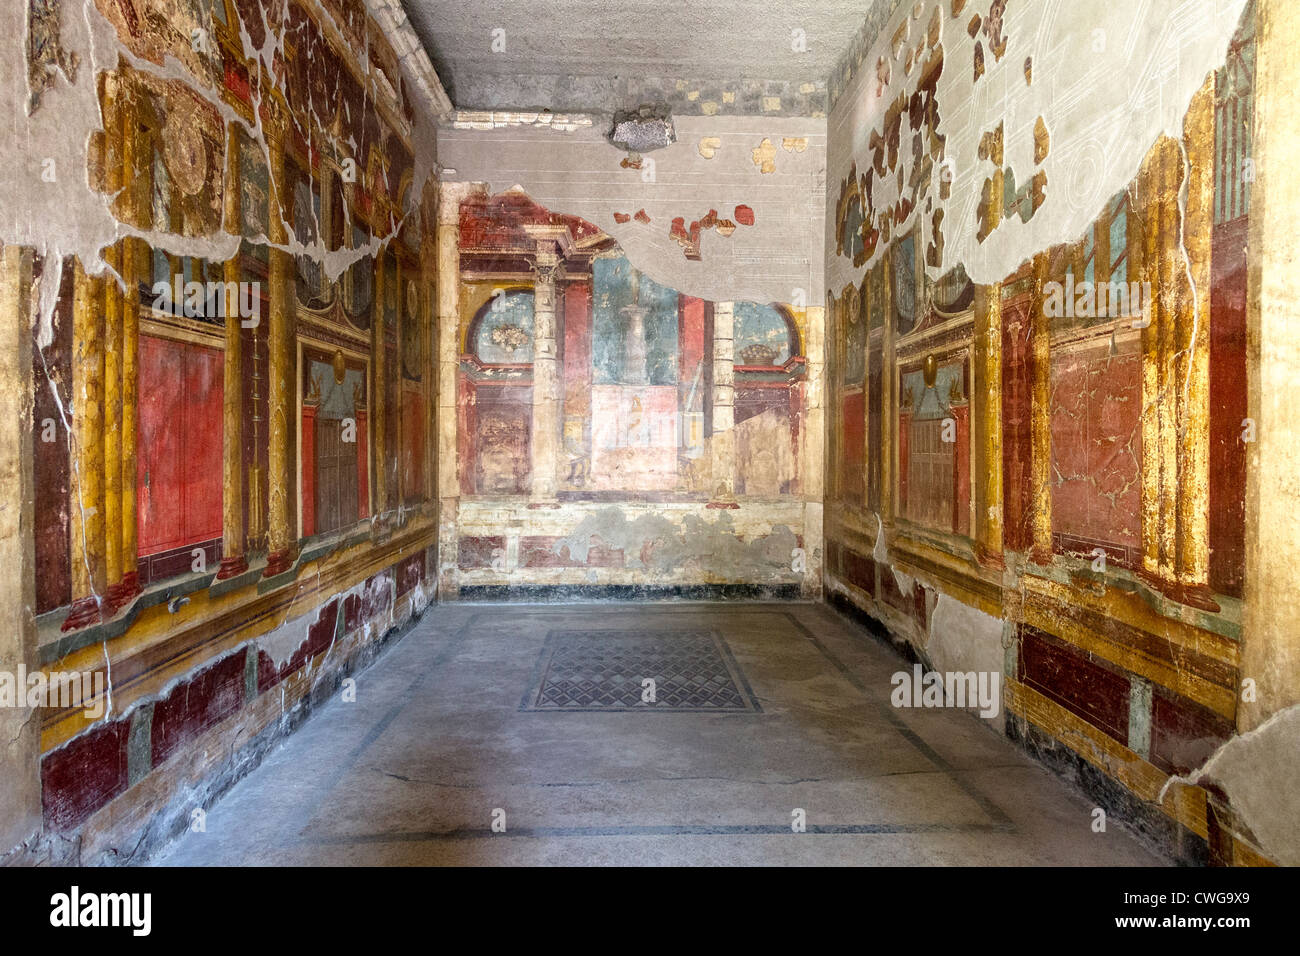 Sontuosi affreschi presso la Villa di Poppaea presso il sito romano di Oplontis, un aristocratico resort. Foto Stock